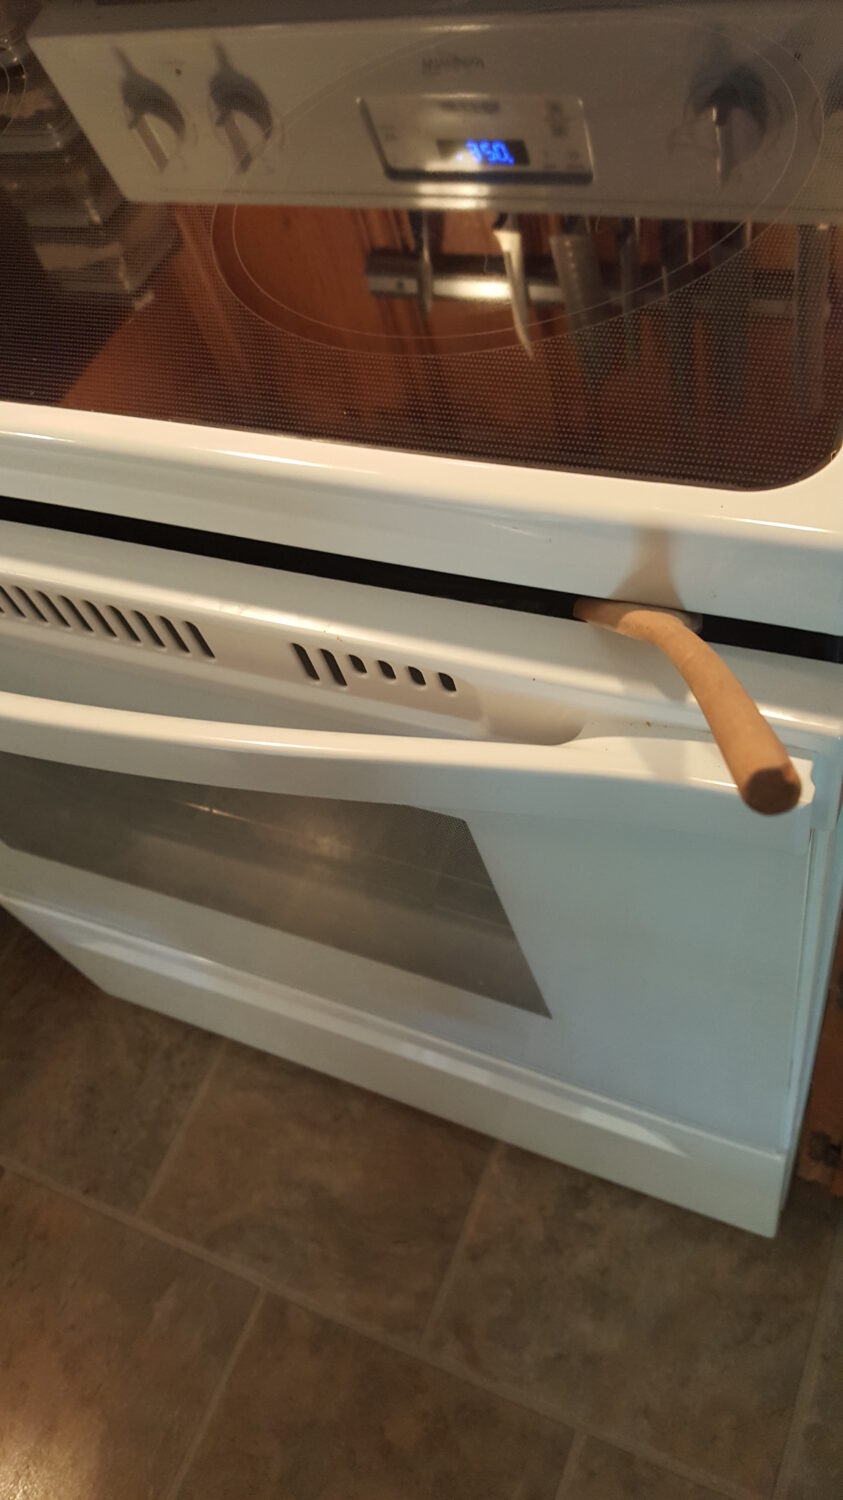 prop oven door with a wooden spoon